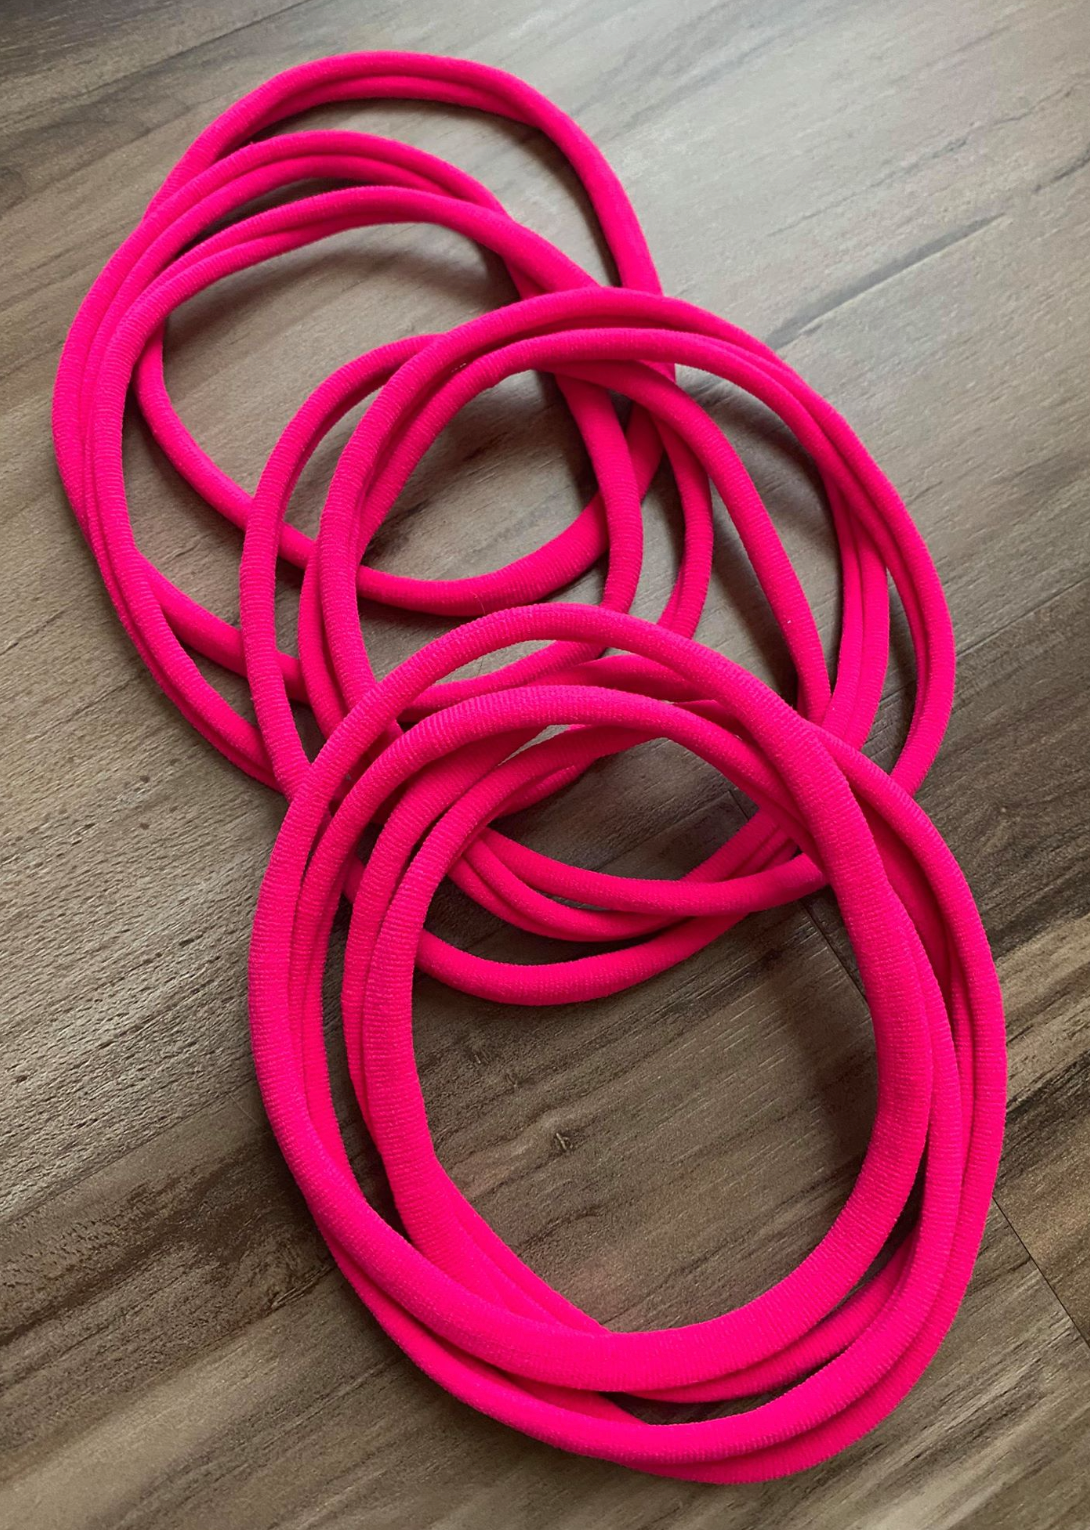 Hot Pink Nylon Headband